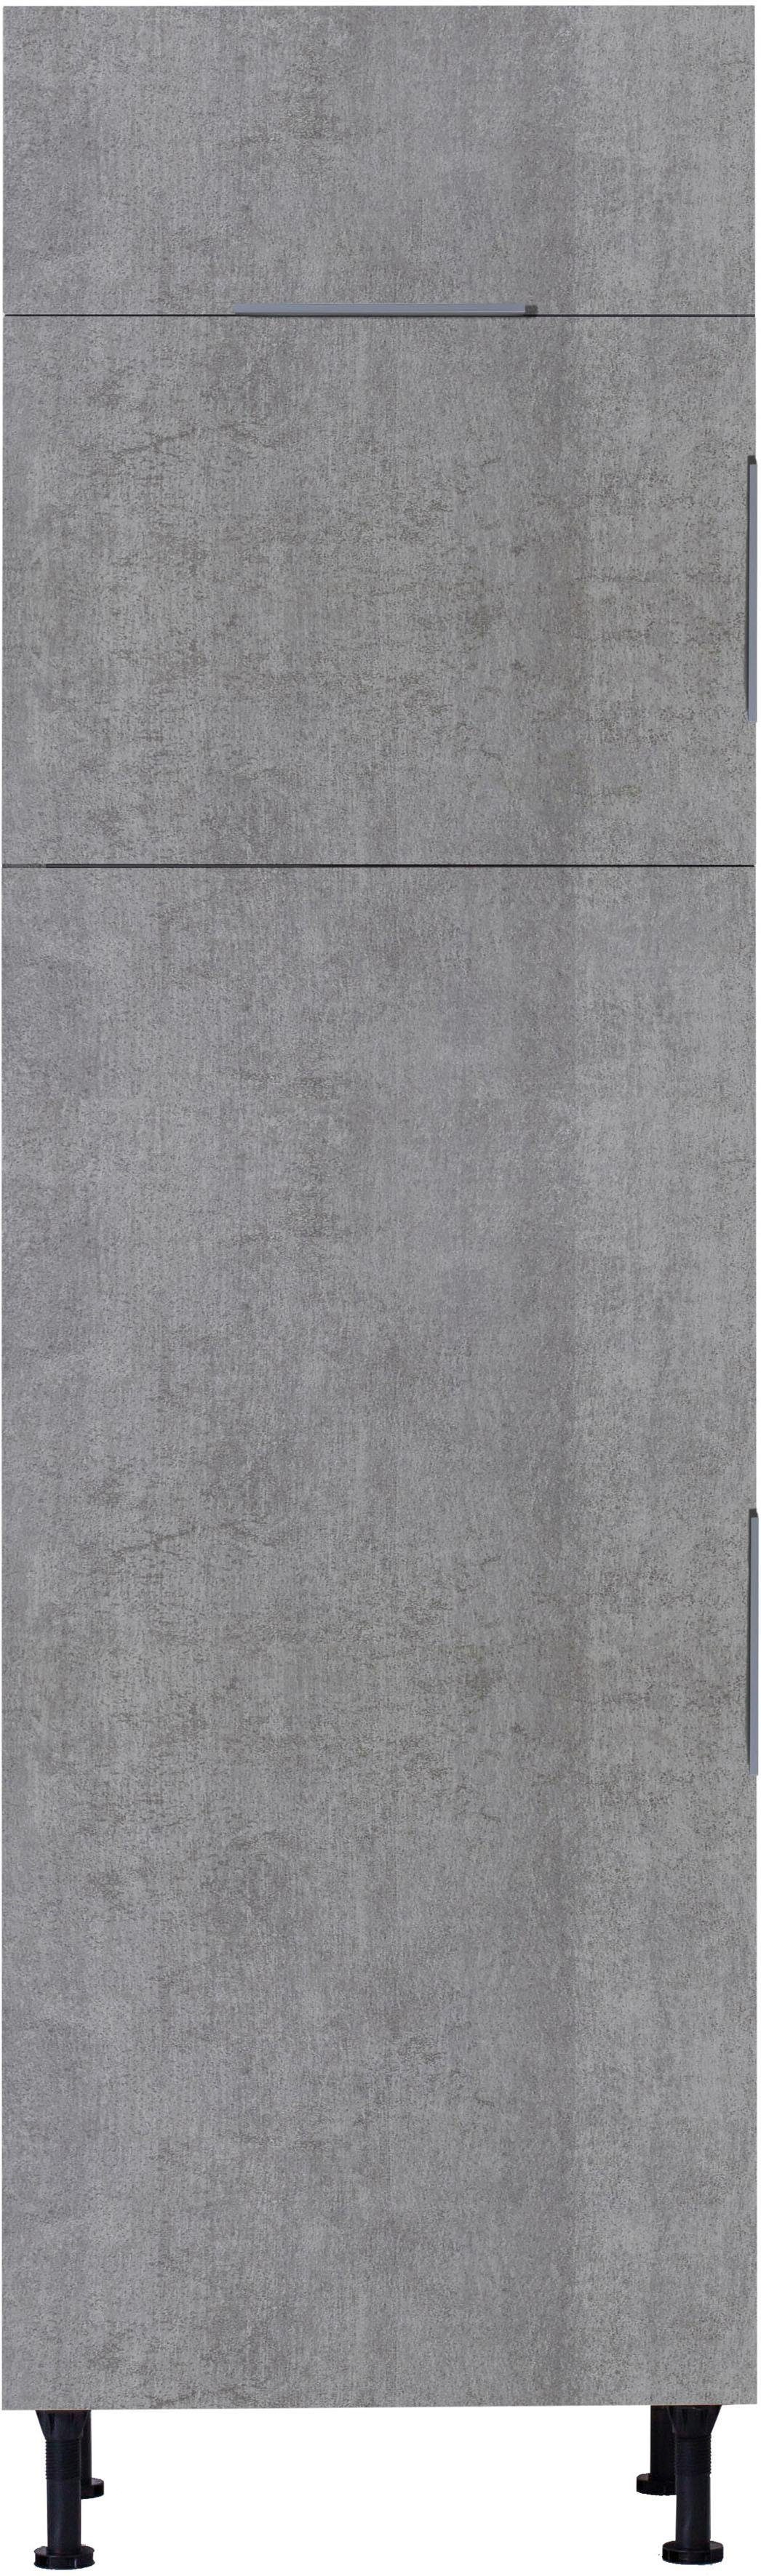 OPTIFIT Kühlumbauschrank Tara betonfarben | betonfarben